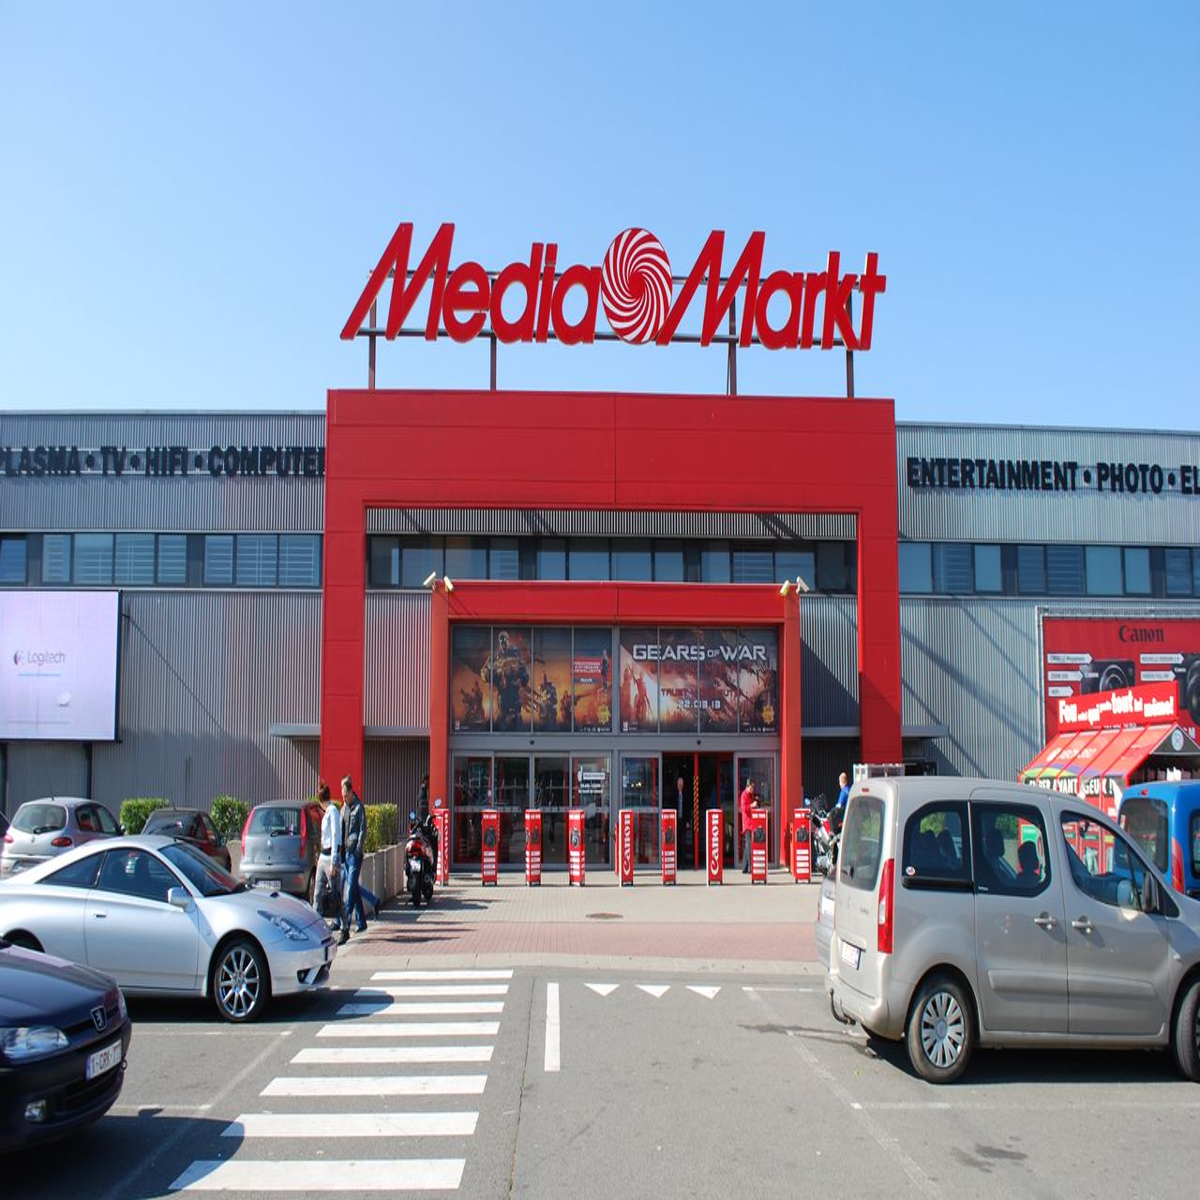 Fnac compra todas as lojas da MediaMarkt em Portugal. Vem aí uma revolução